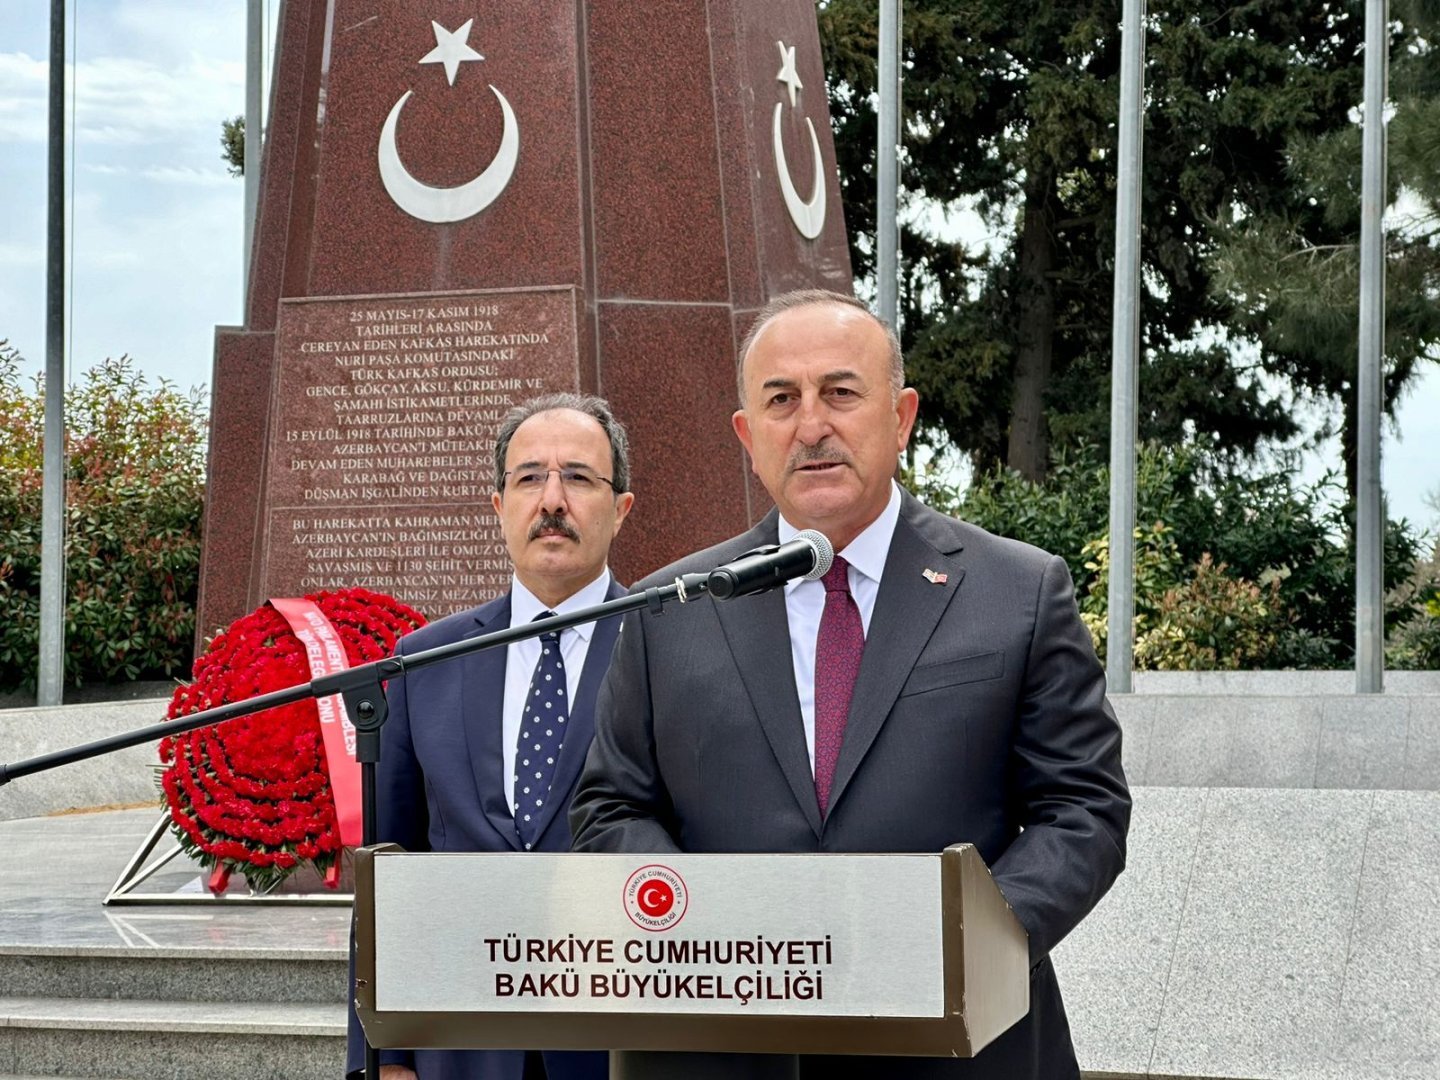 Azərbaycan və Ermənistan arasında sülh müqaviləsinin imzalanması şərtdir - Çavuşoğlu